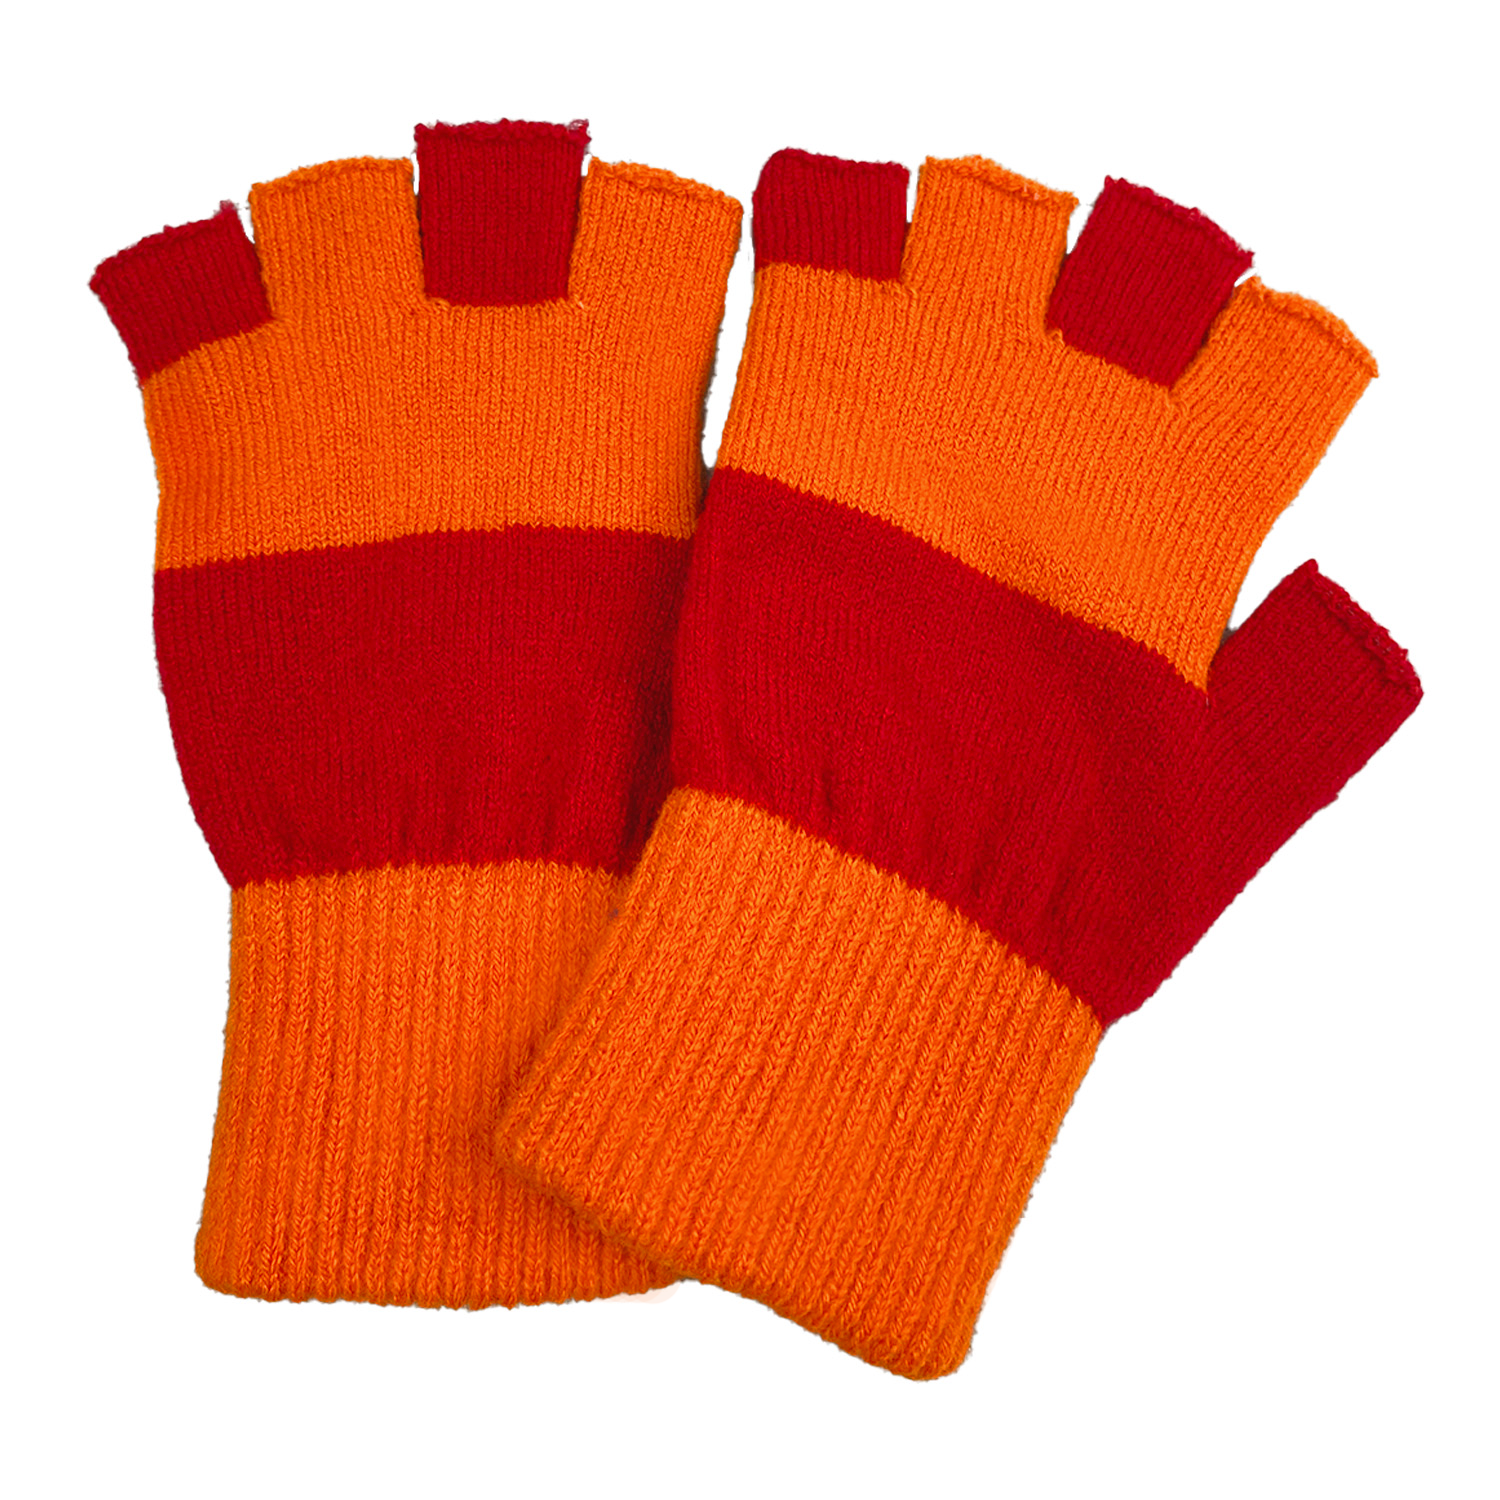 handschoenen kielegat oranje rood kopen